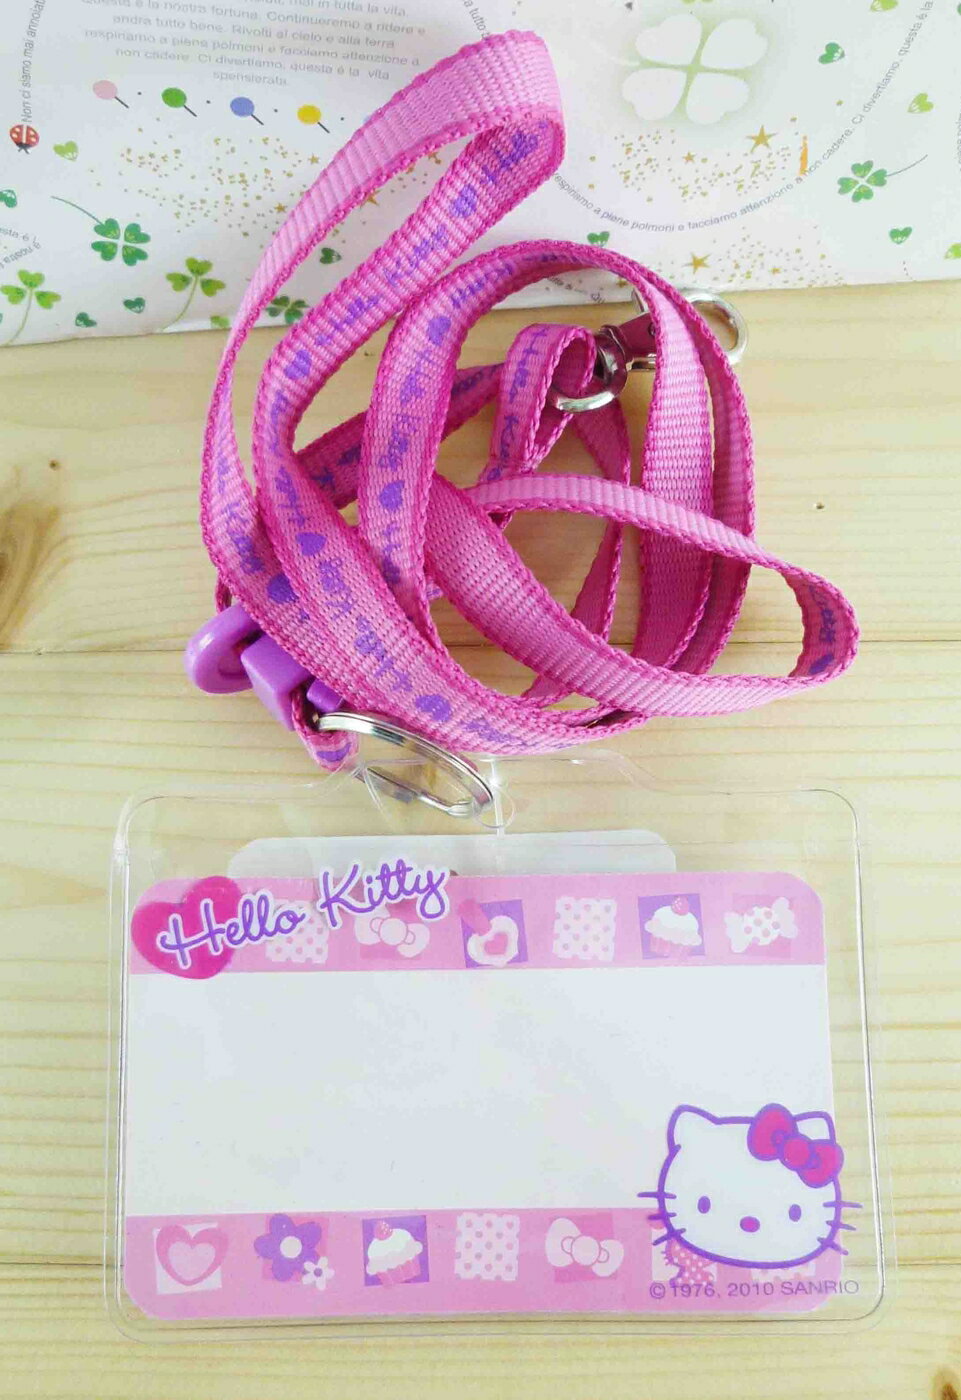 【震撼精品百貨】Hello Kitty 凱蒂貓 KITTY證件套附繩-點心圖案-粉色 震撼日式精品百貨